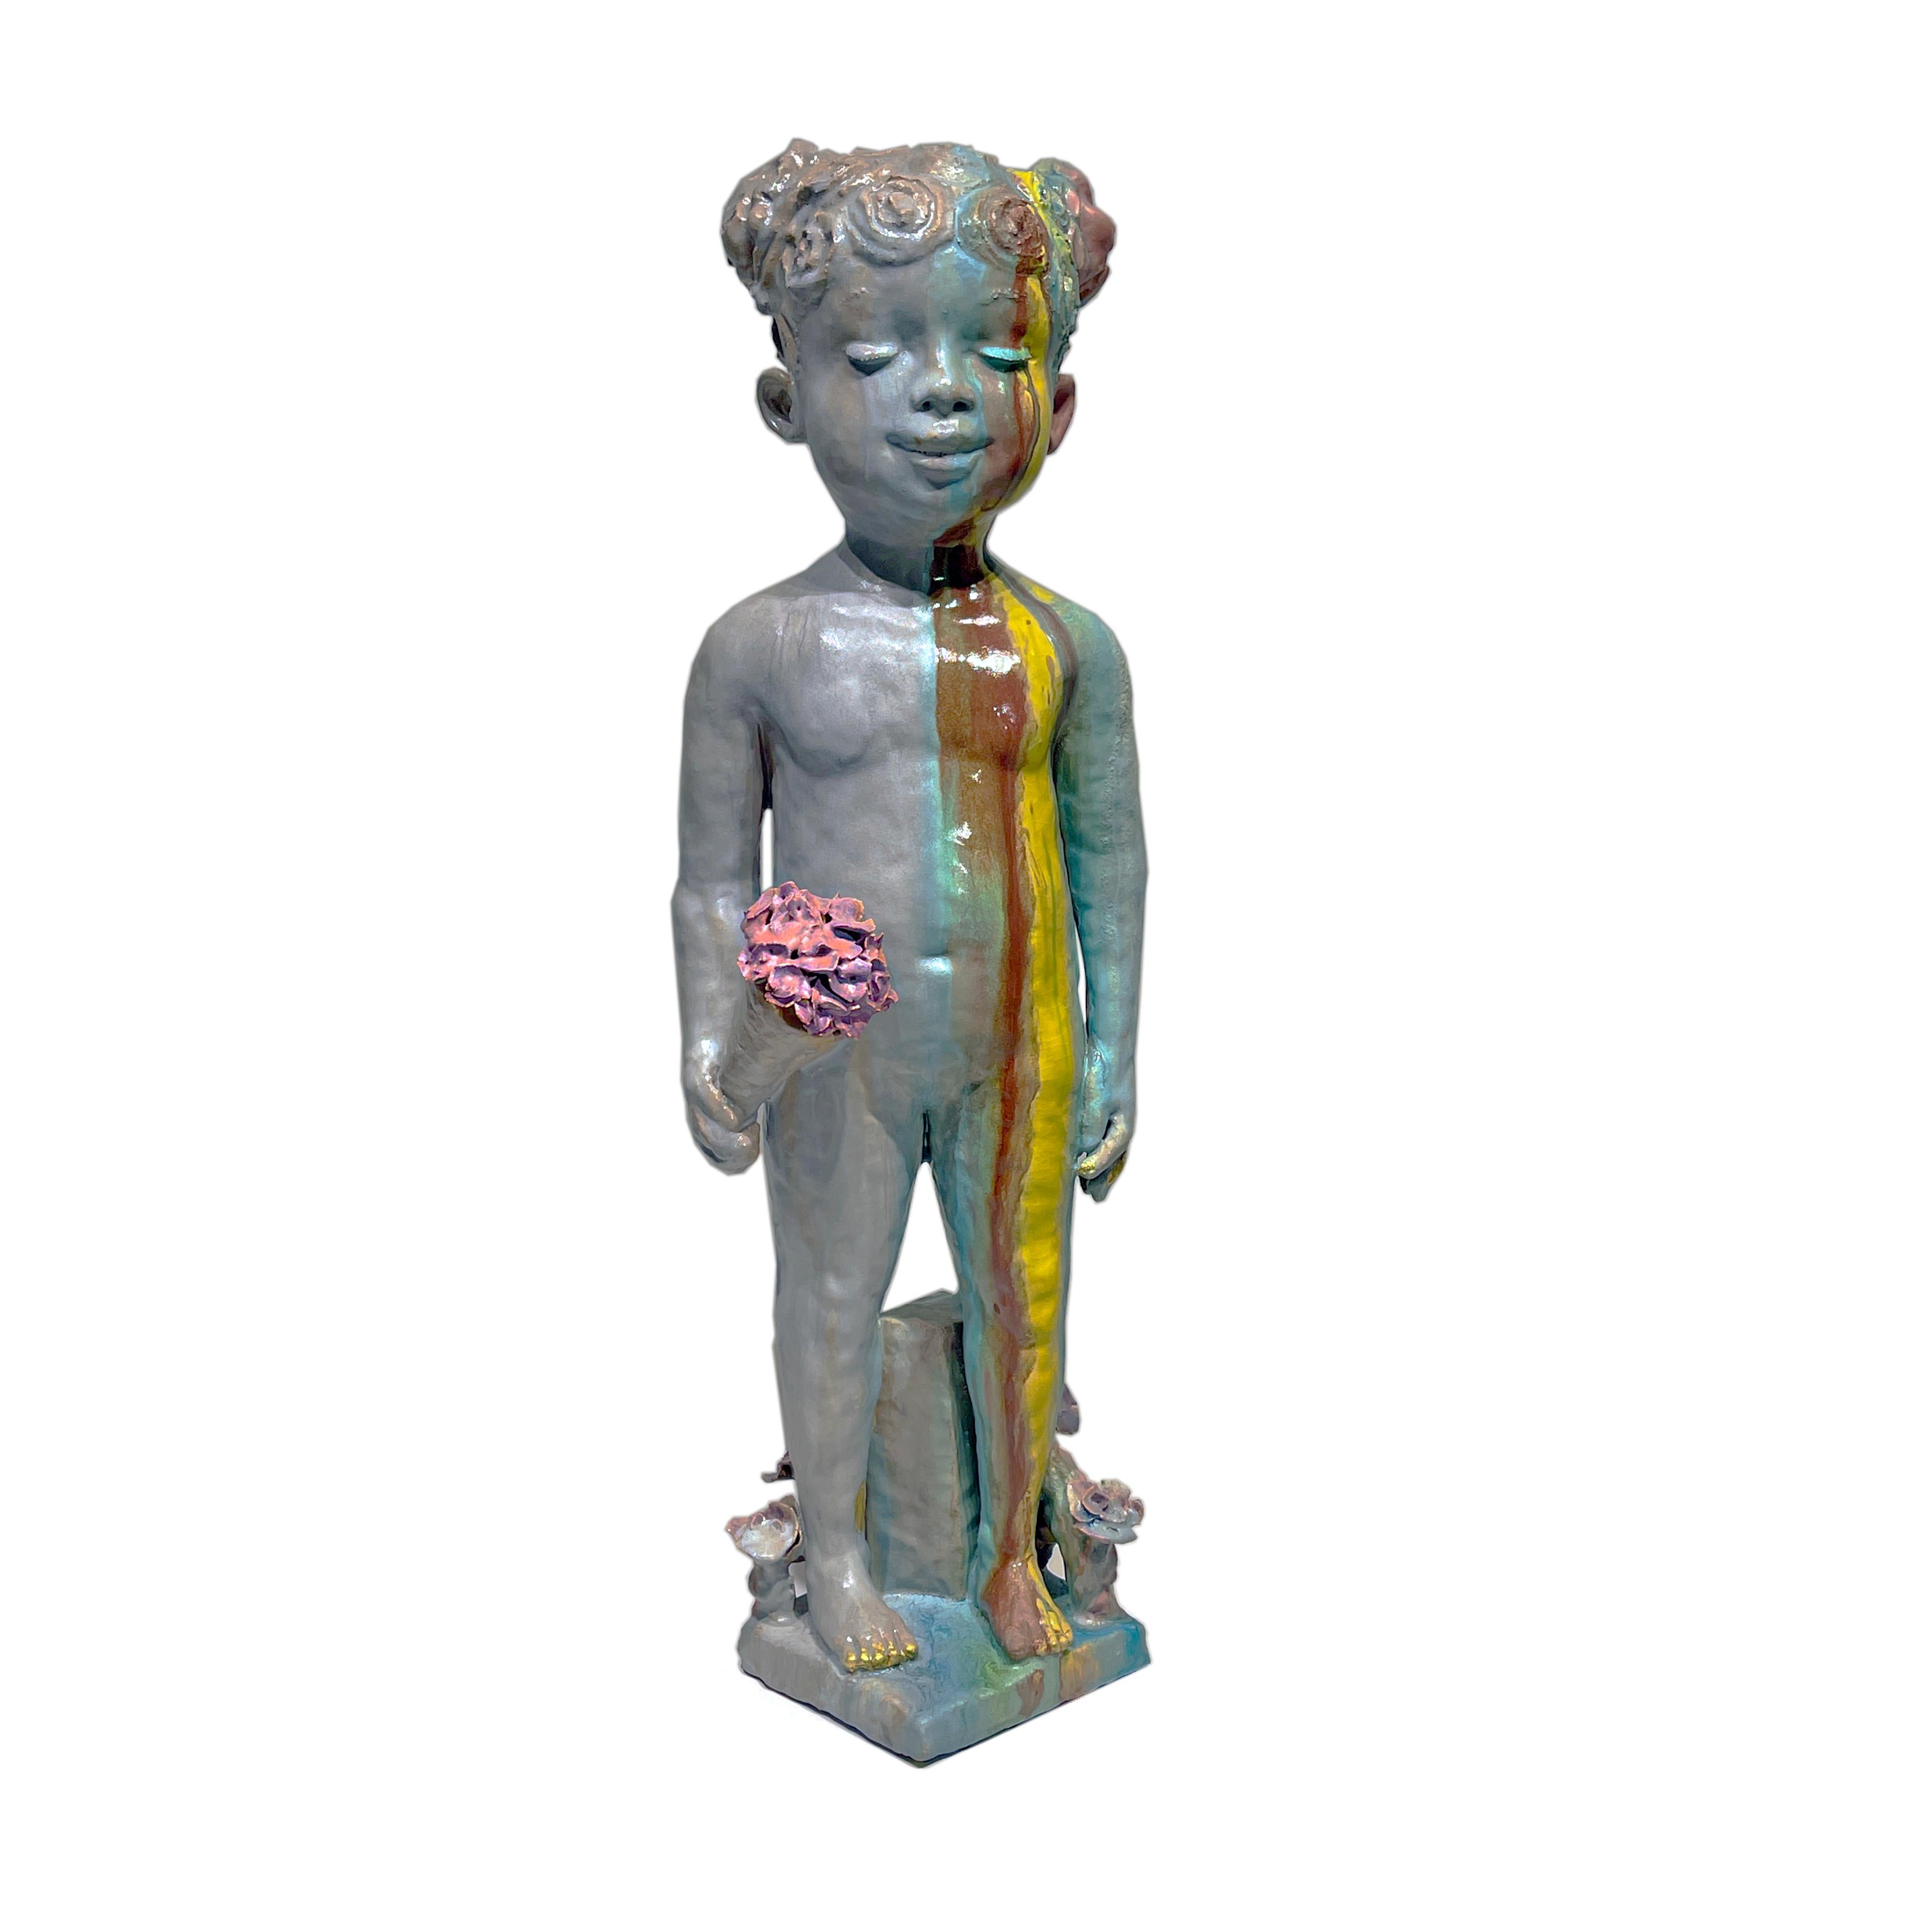 Mädchen, das Junge liebt - Große Keramik-Skulptur eines Kindes mit Blumen (Zeitgenössisch), Mixed Media Art, von Jacob Foran